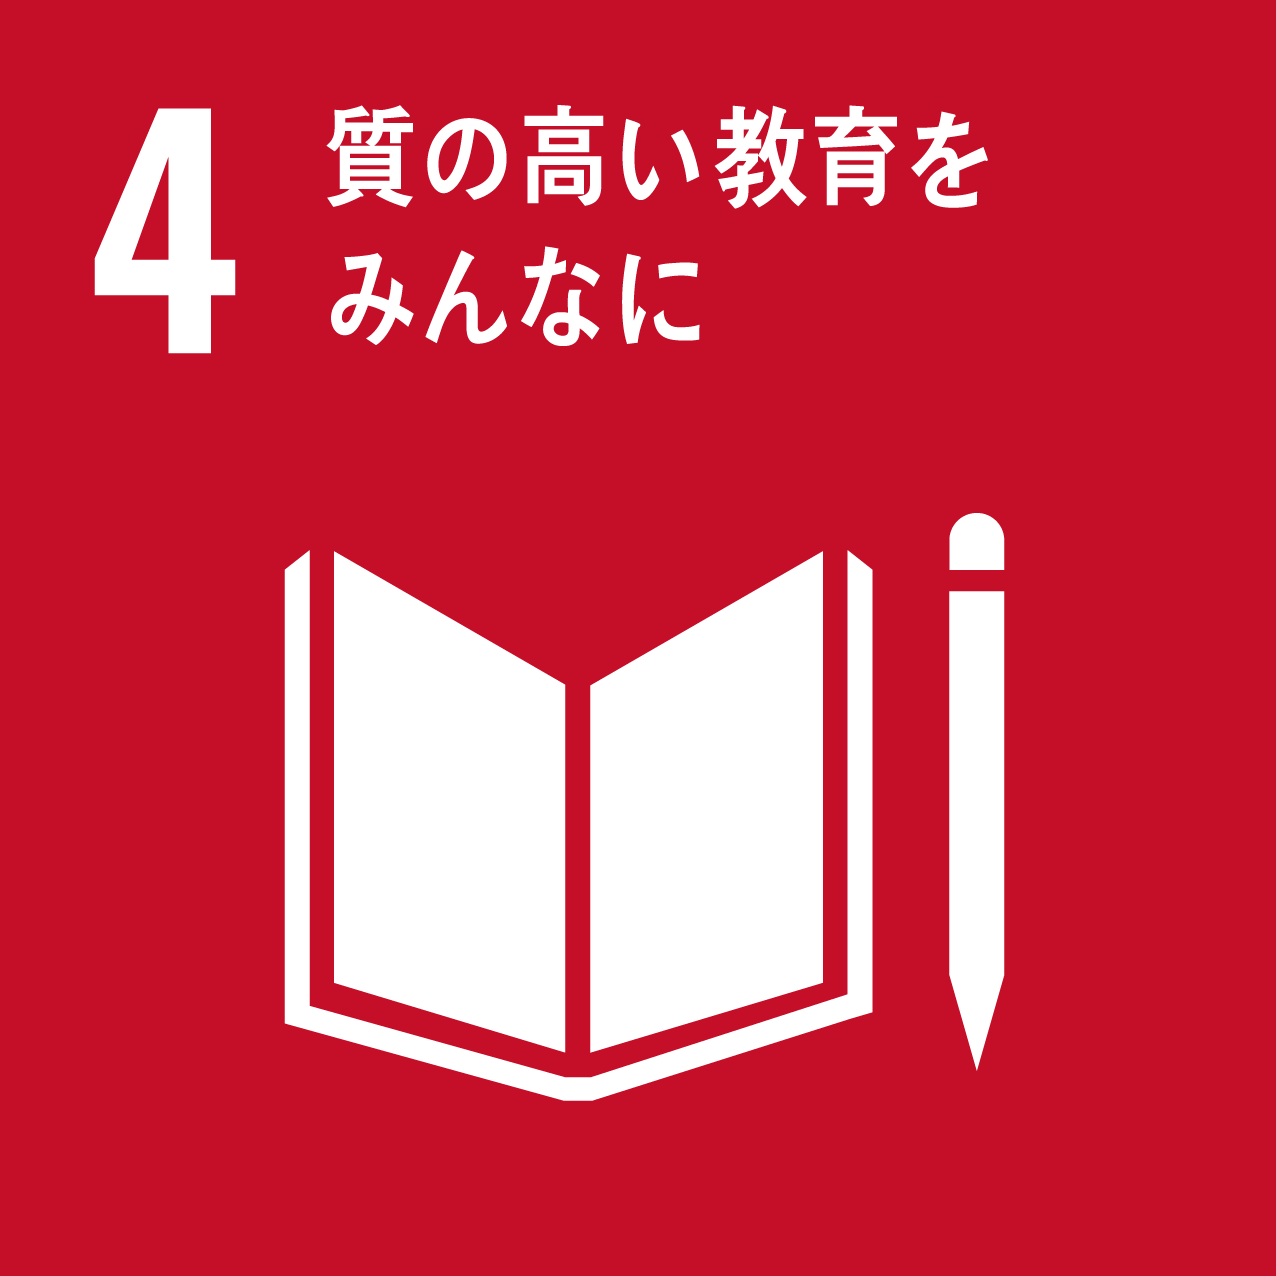 【JEOの取り組みに賛同】 日本ＰＣサービスより、児童養護施設に 学習用パソコンを寄付・導入支援も無償提供